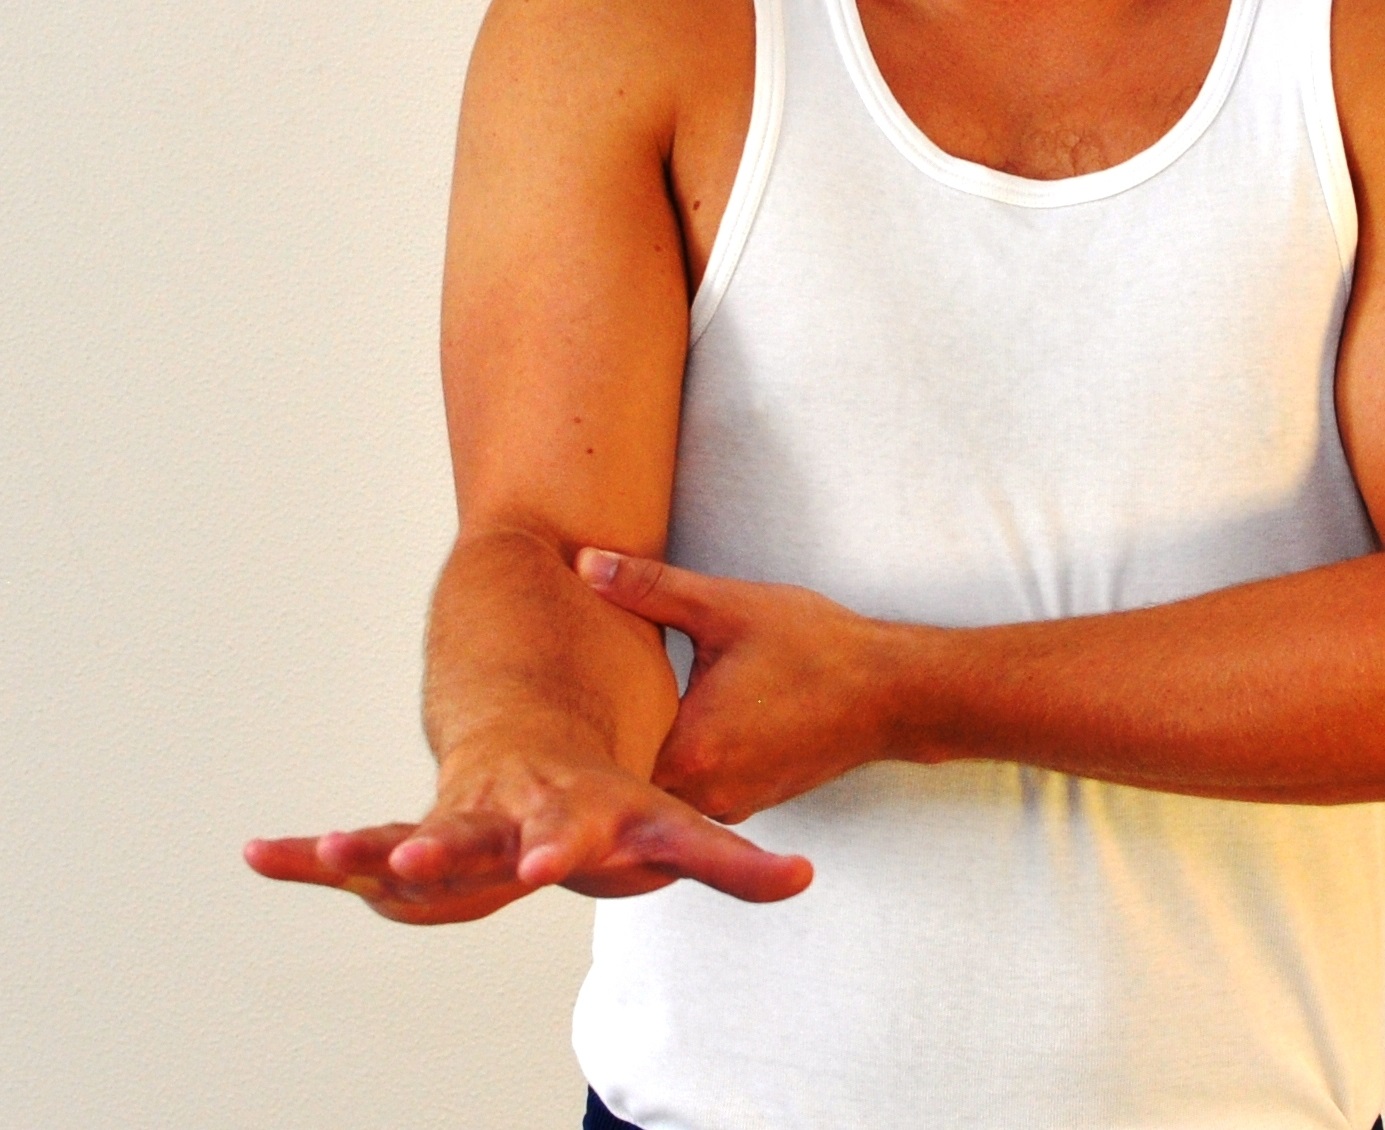 Arm med 90 grader bøjet albue - håndfladen vender nedad og fingrene er strakte.